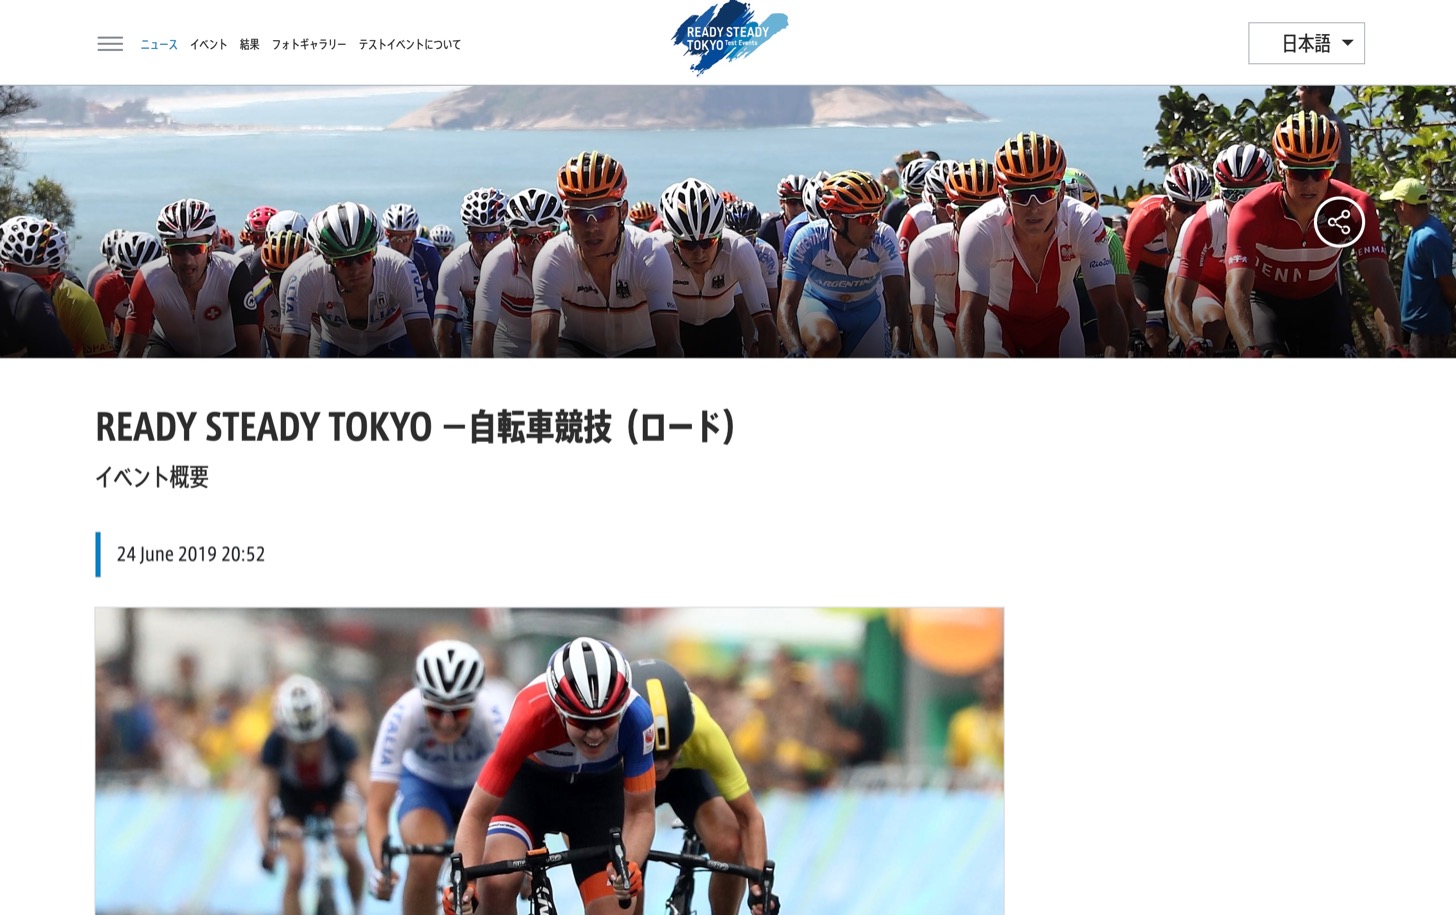 7 21開催 東京自転車ロードレーステストイベントの参加国と選手が発表 多摩ポン